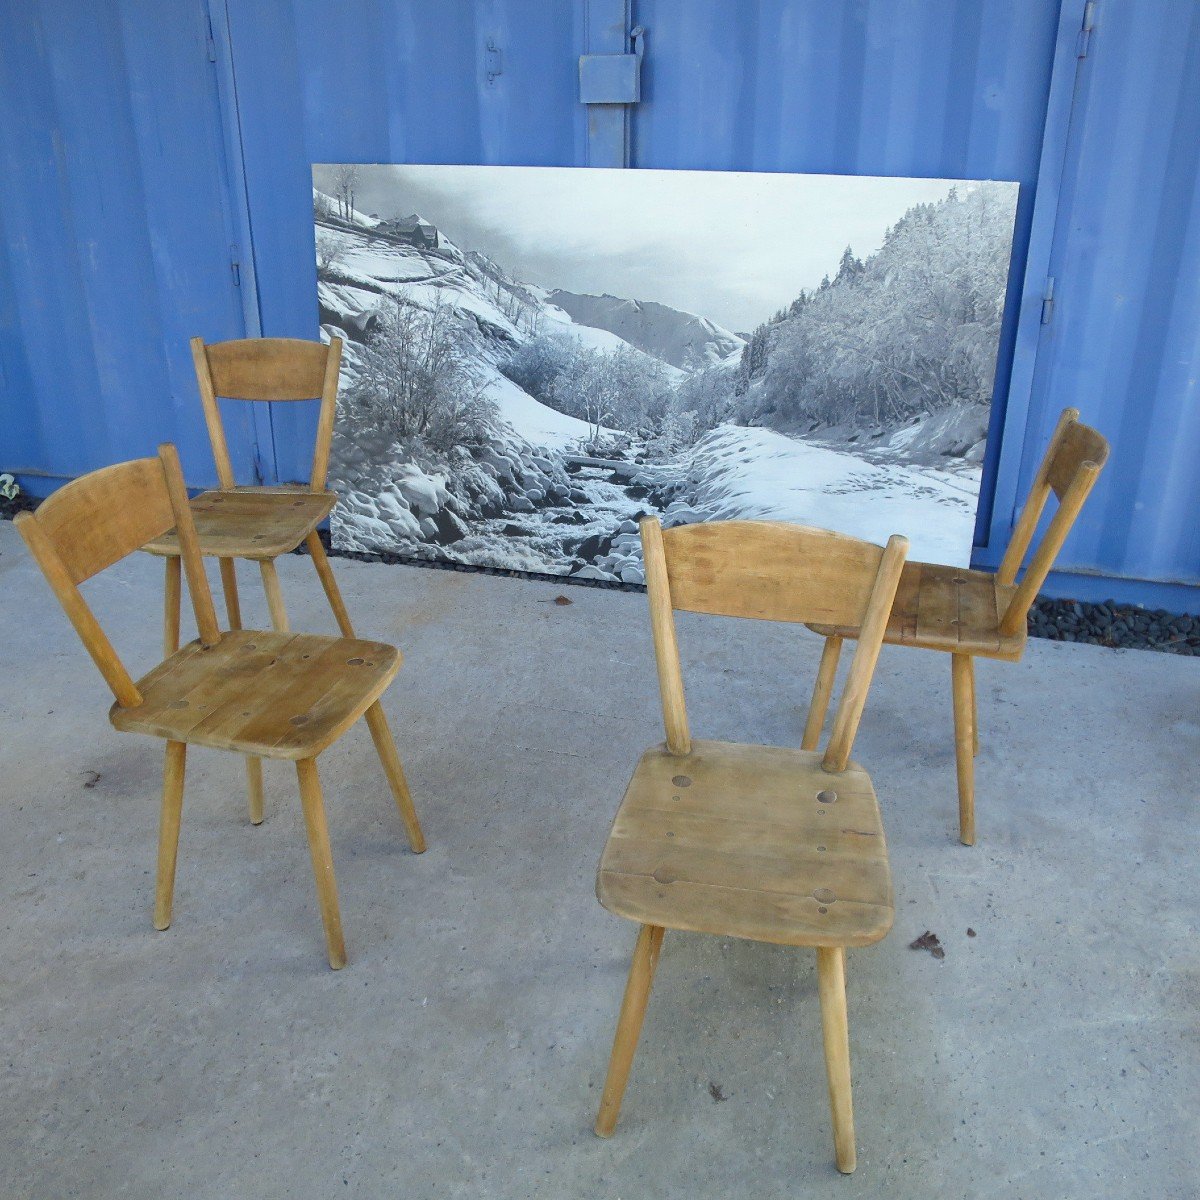 Cadre photo artisanal en bois déco chalet montagne wooden photo frame